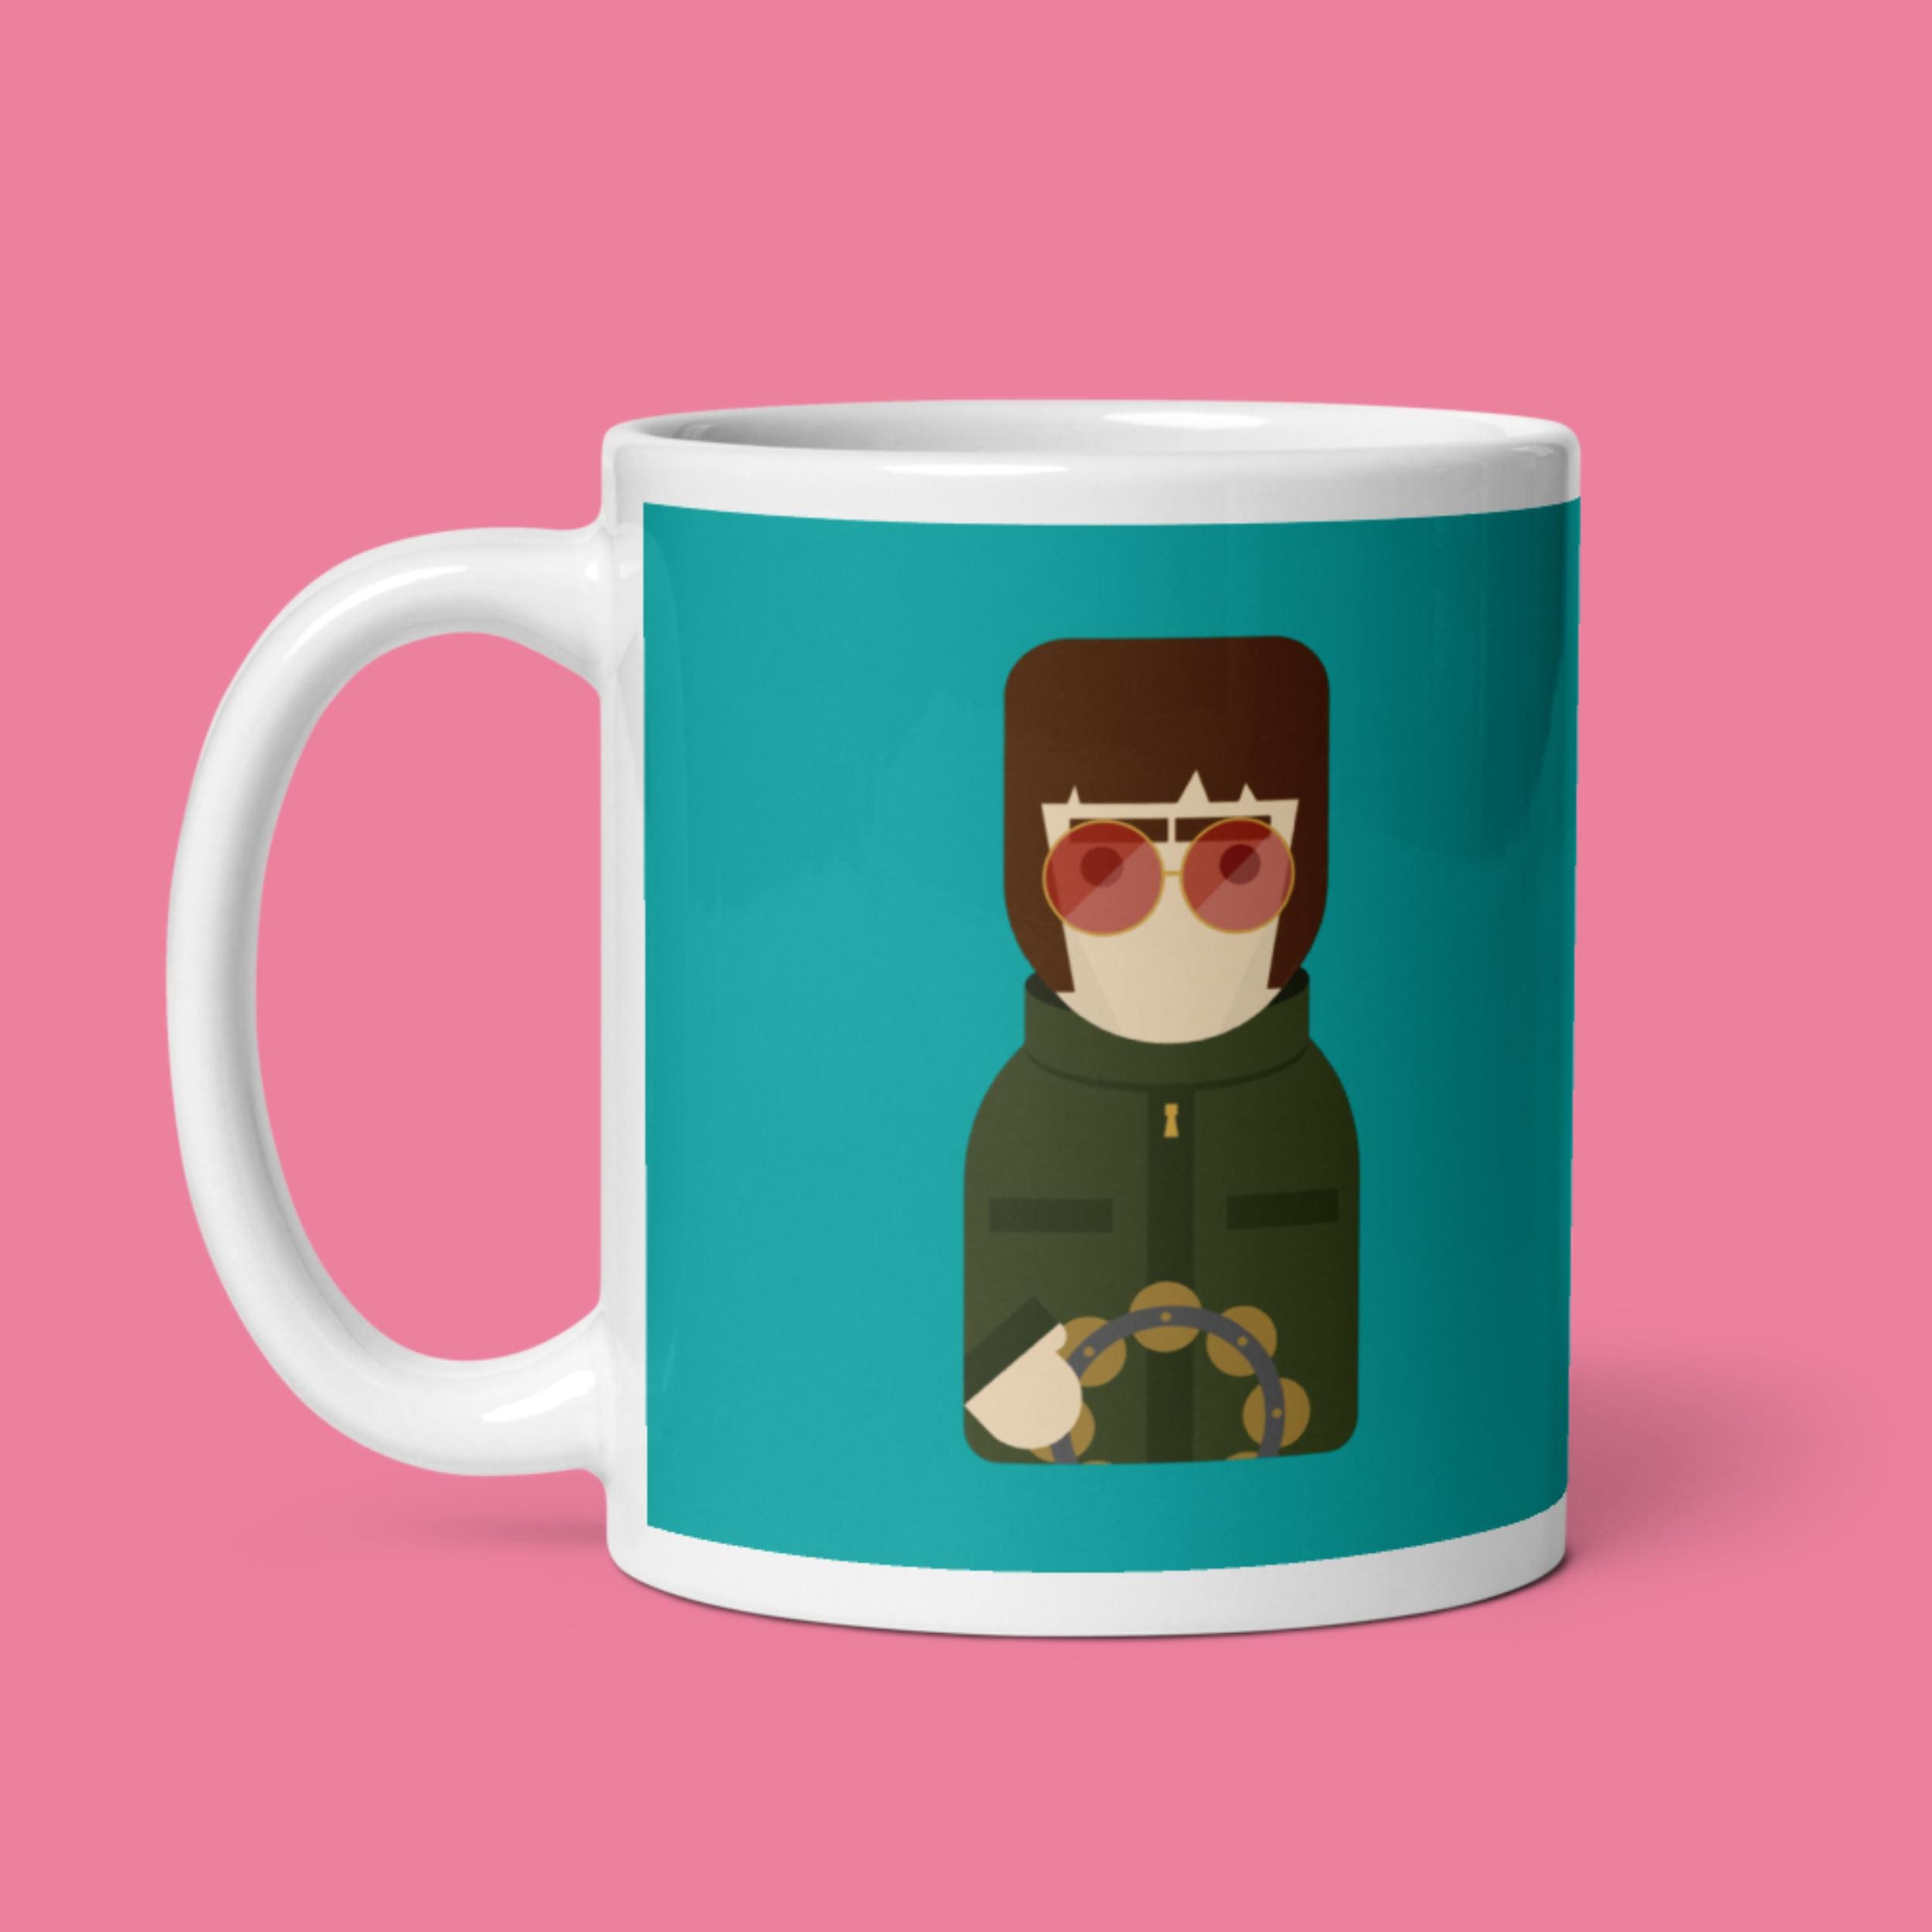 11oz Ceramic Mug - Liam Gallagher - Little Icons